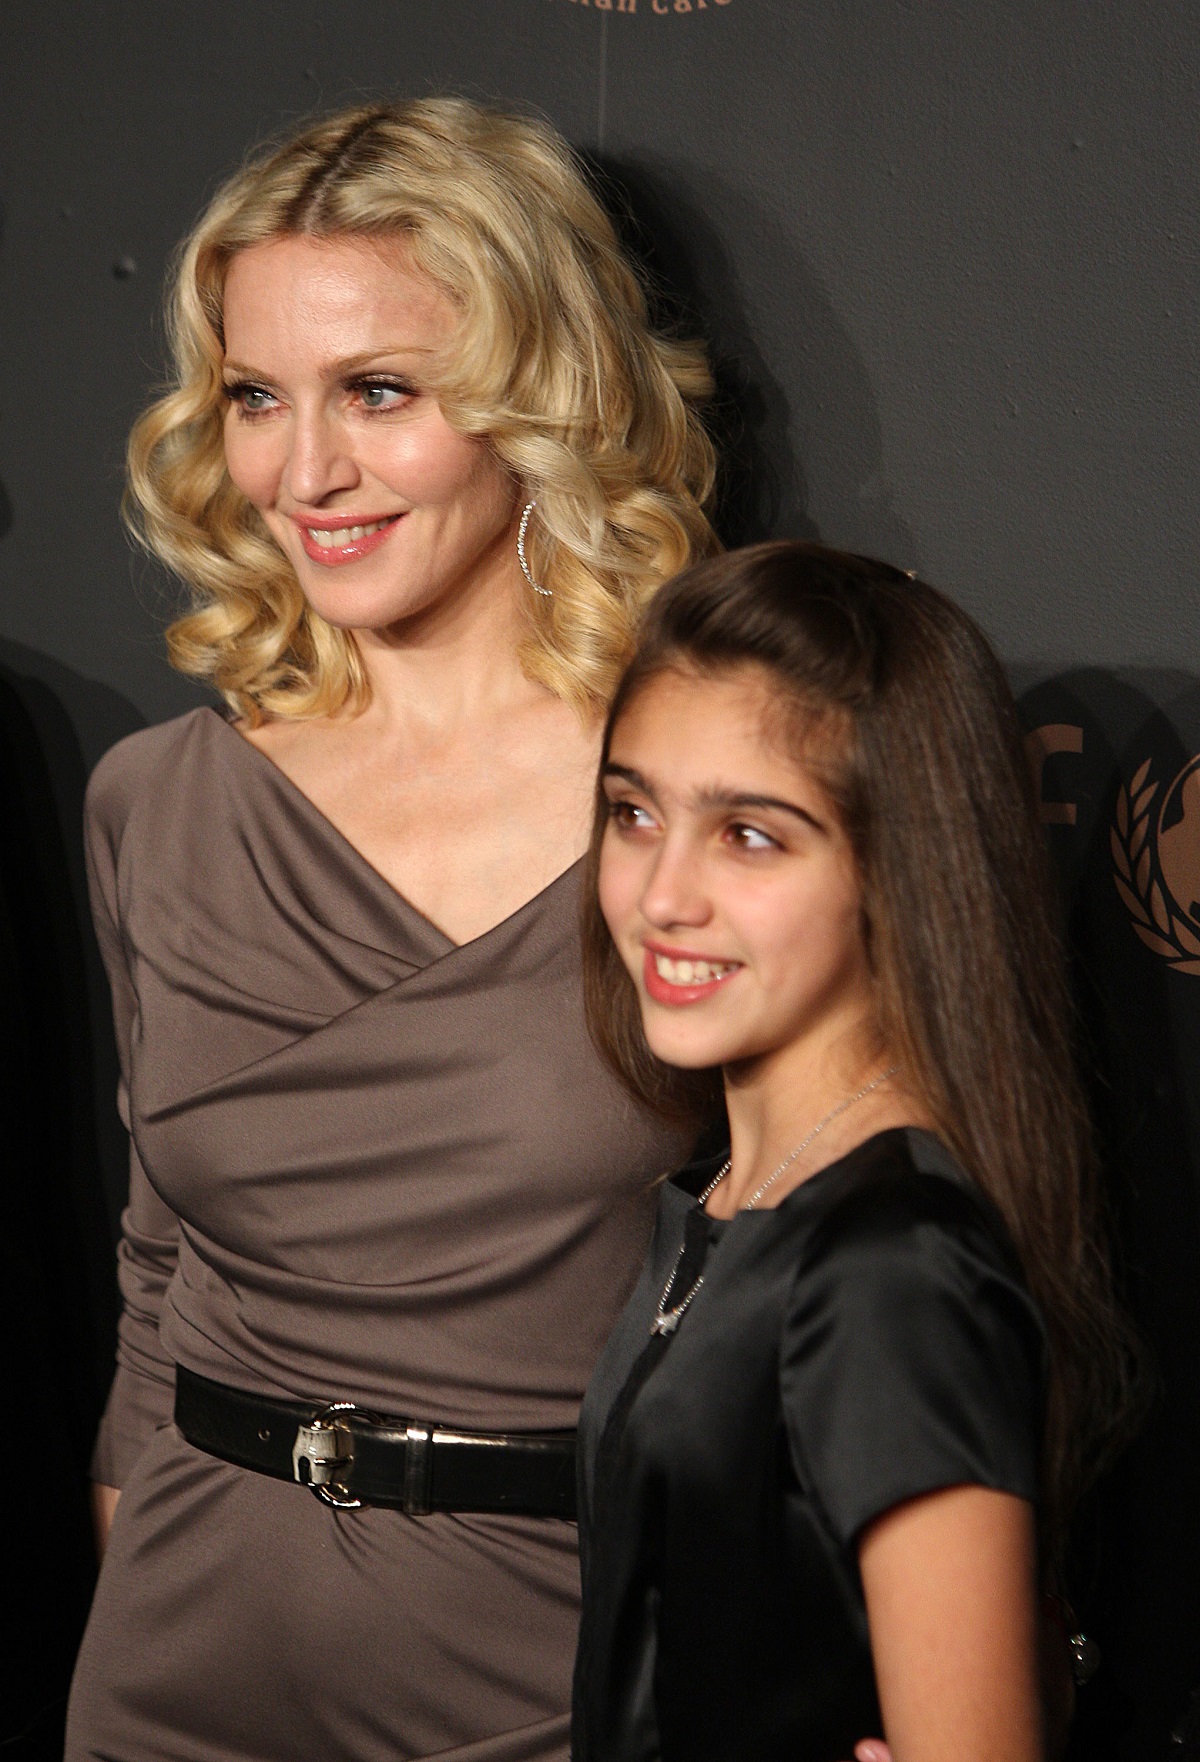 Fiica Madonnei, Lourdes Leon, alături de mama sa Madonna în New York pe covorul roșu în anul 2008